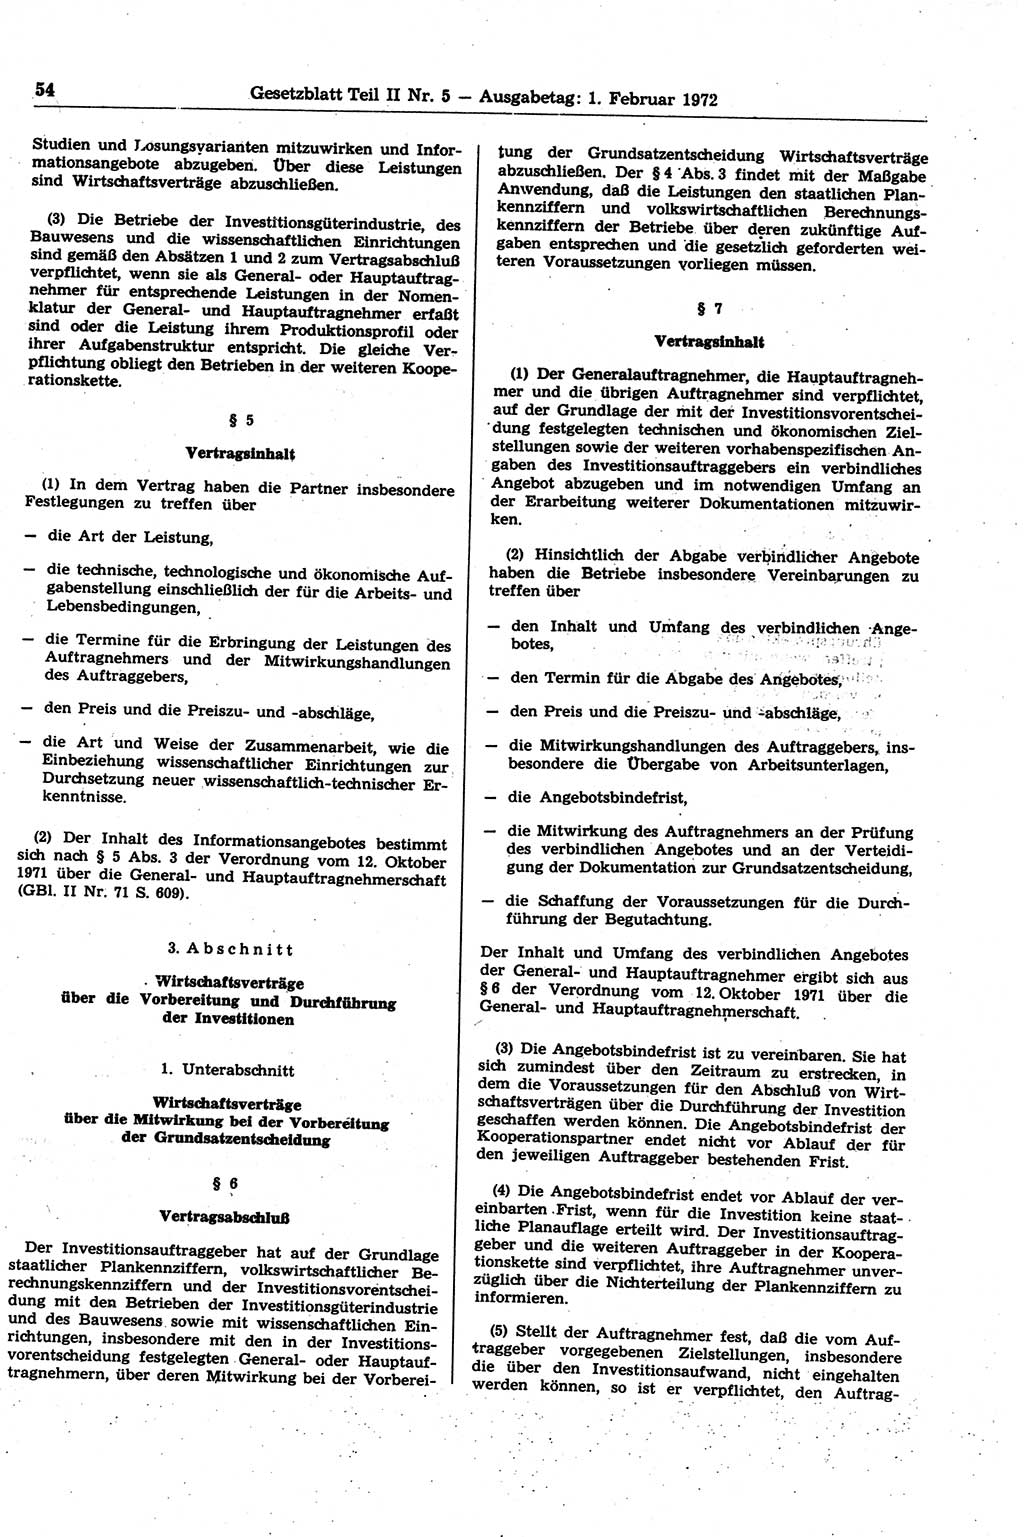 Gesetzblatt (GBl.) der Deutschen Demokratischen Republik (DDR) Teil ⅠⅠ 1972, Seite 54 (GBl. DDR ⅠⅠ 1972, S. 54)